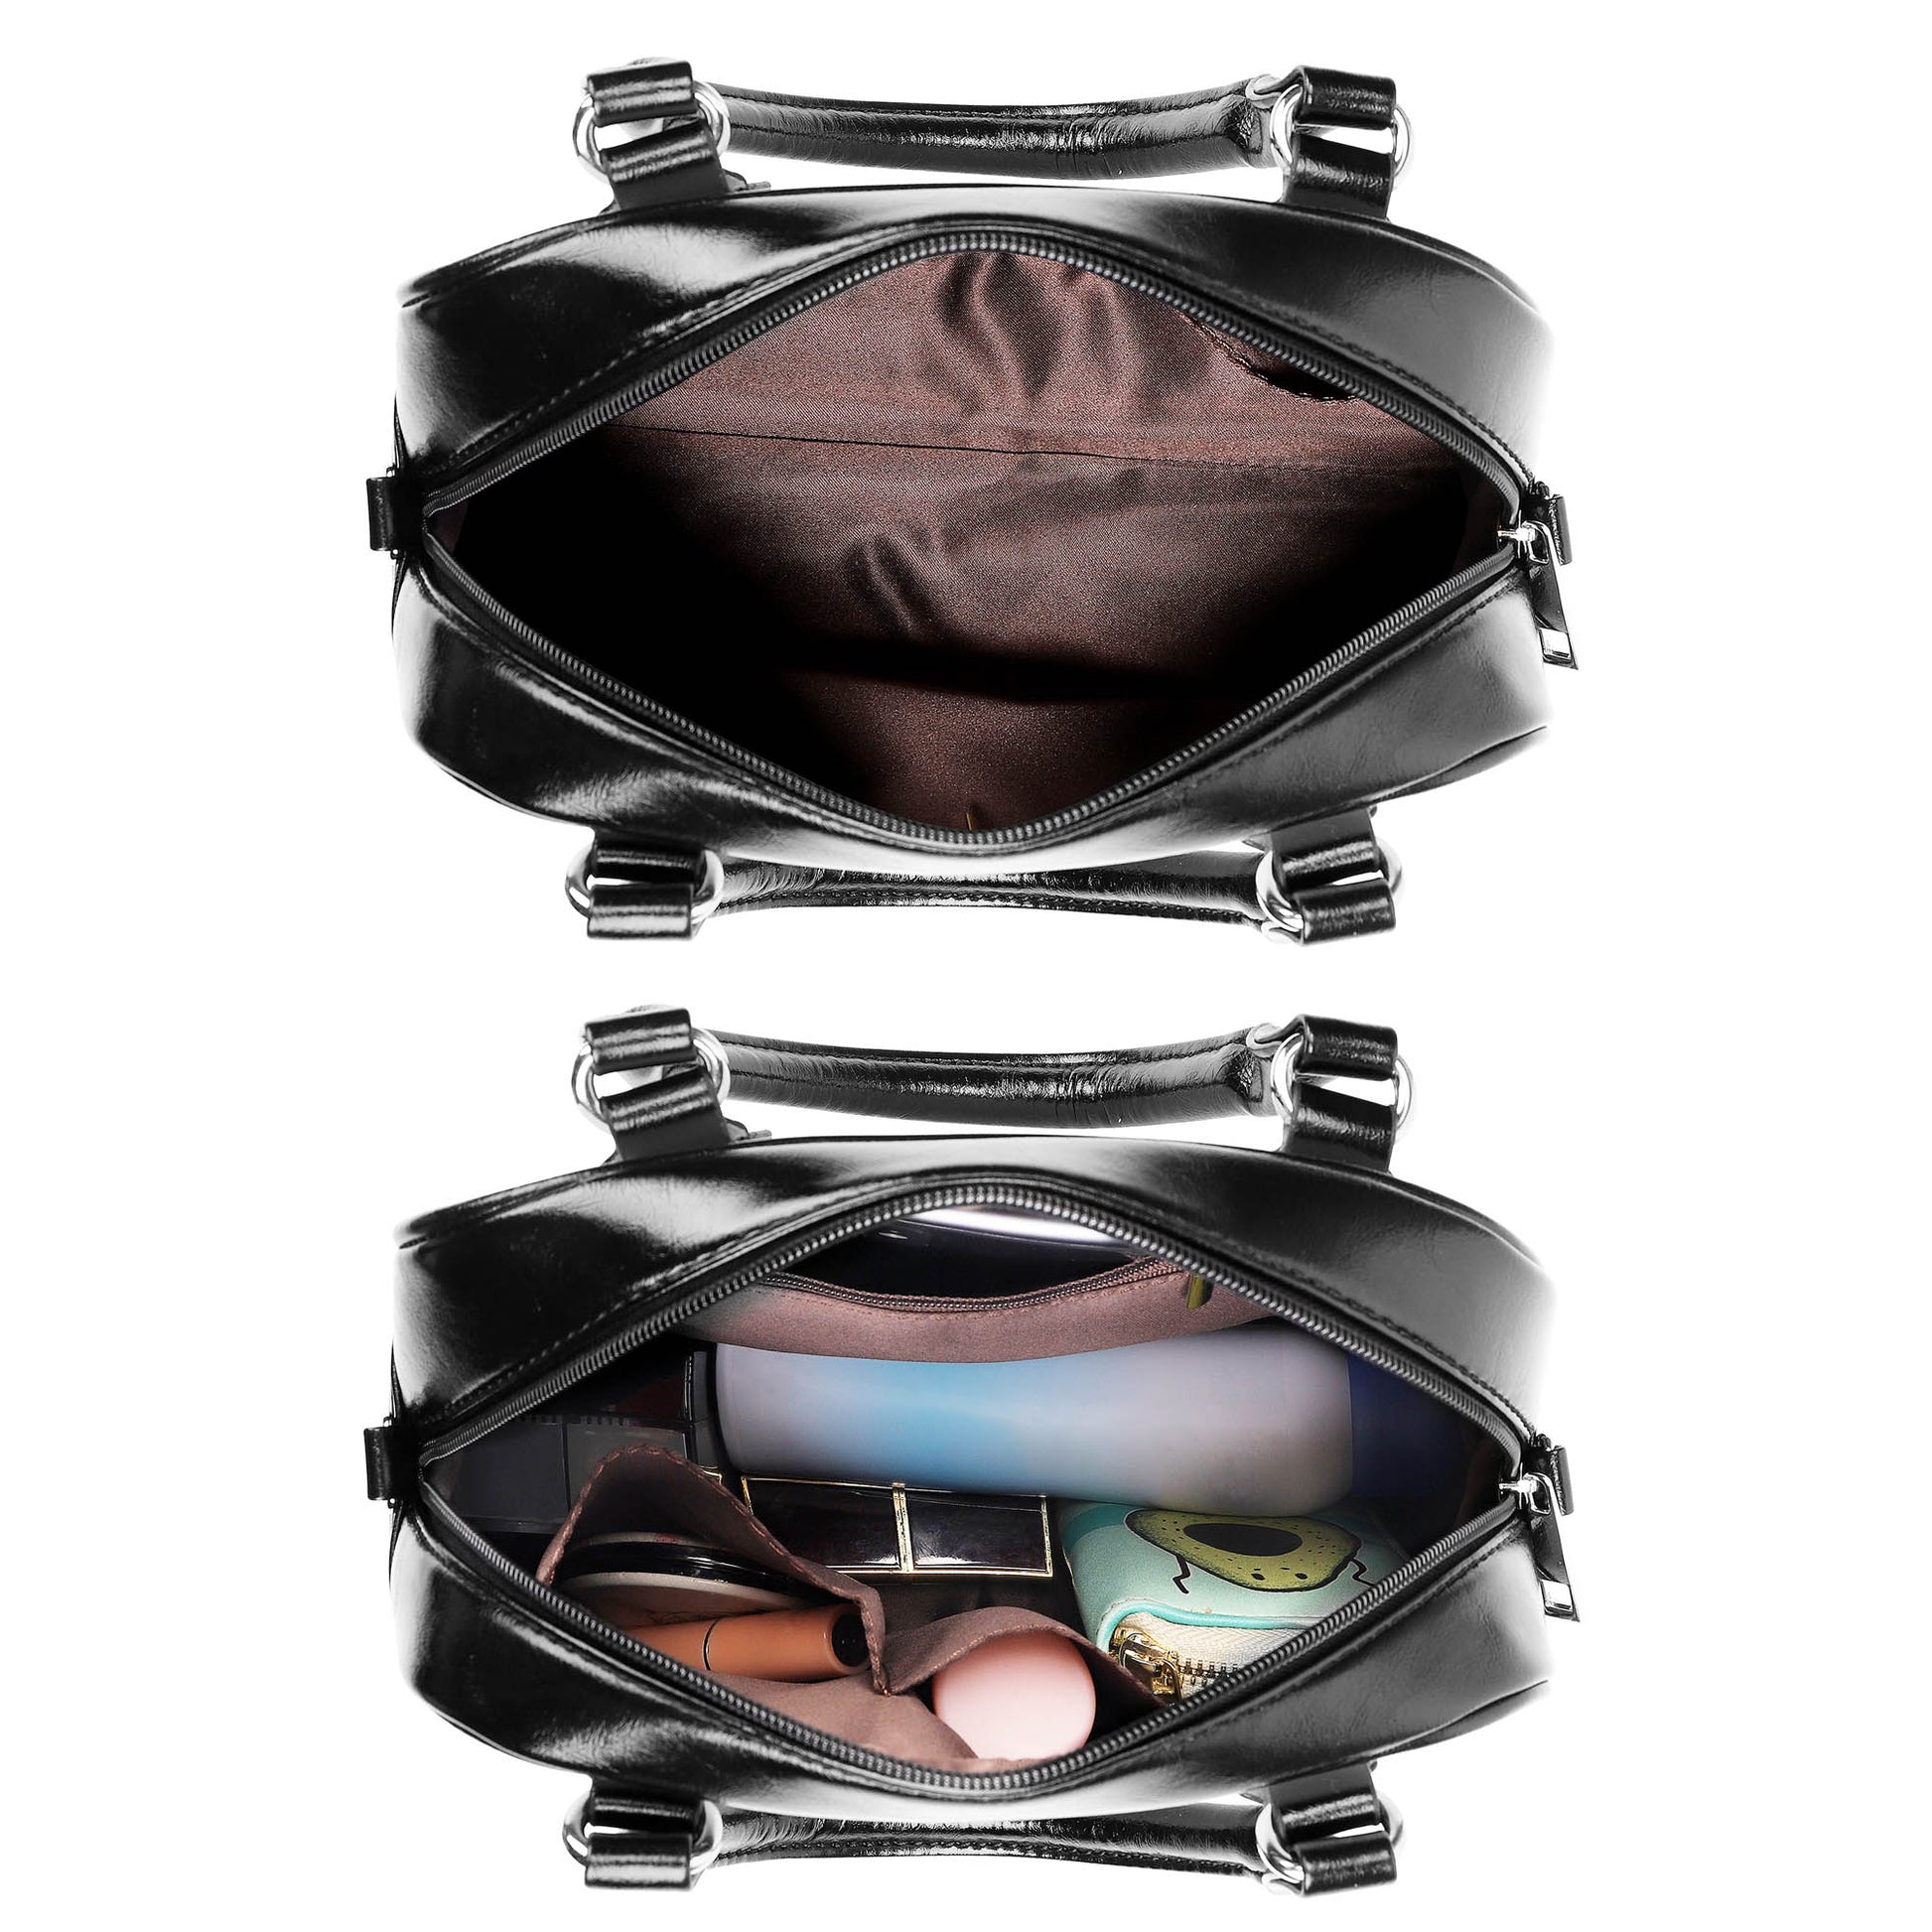 Outlander Fraser Tartan Shoulder Handbags - Tartanvibesclothing